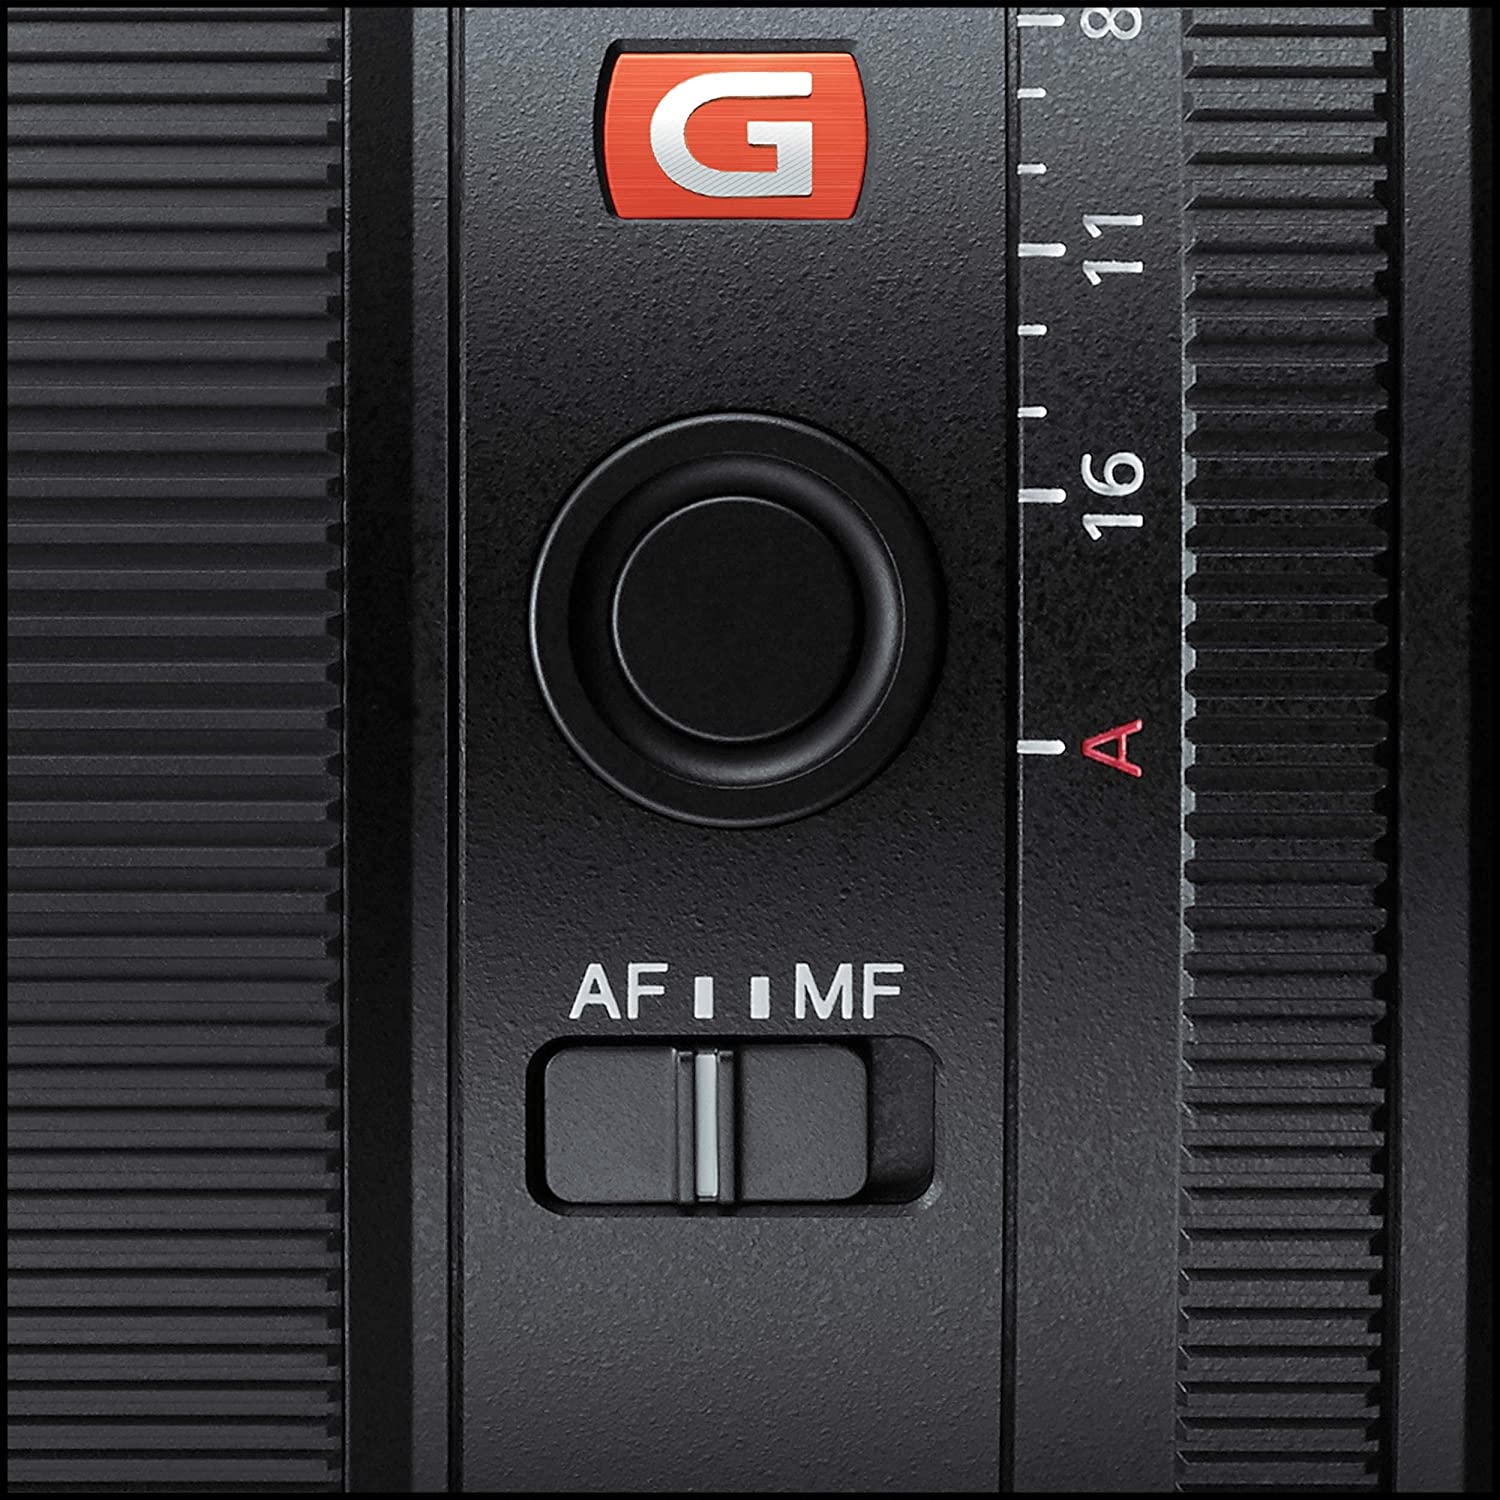 Sony FE 85mm f/1.4 GM Lens -